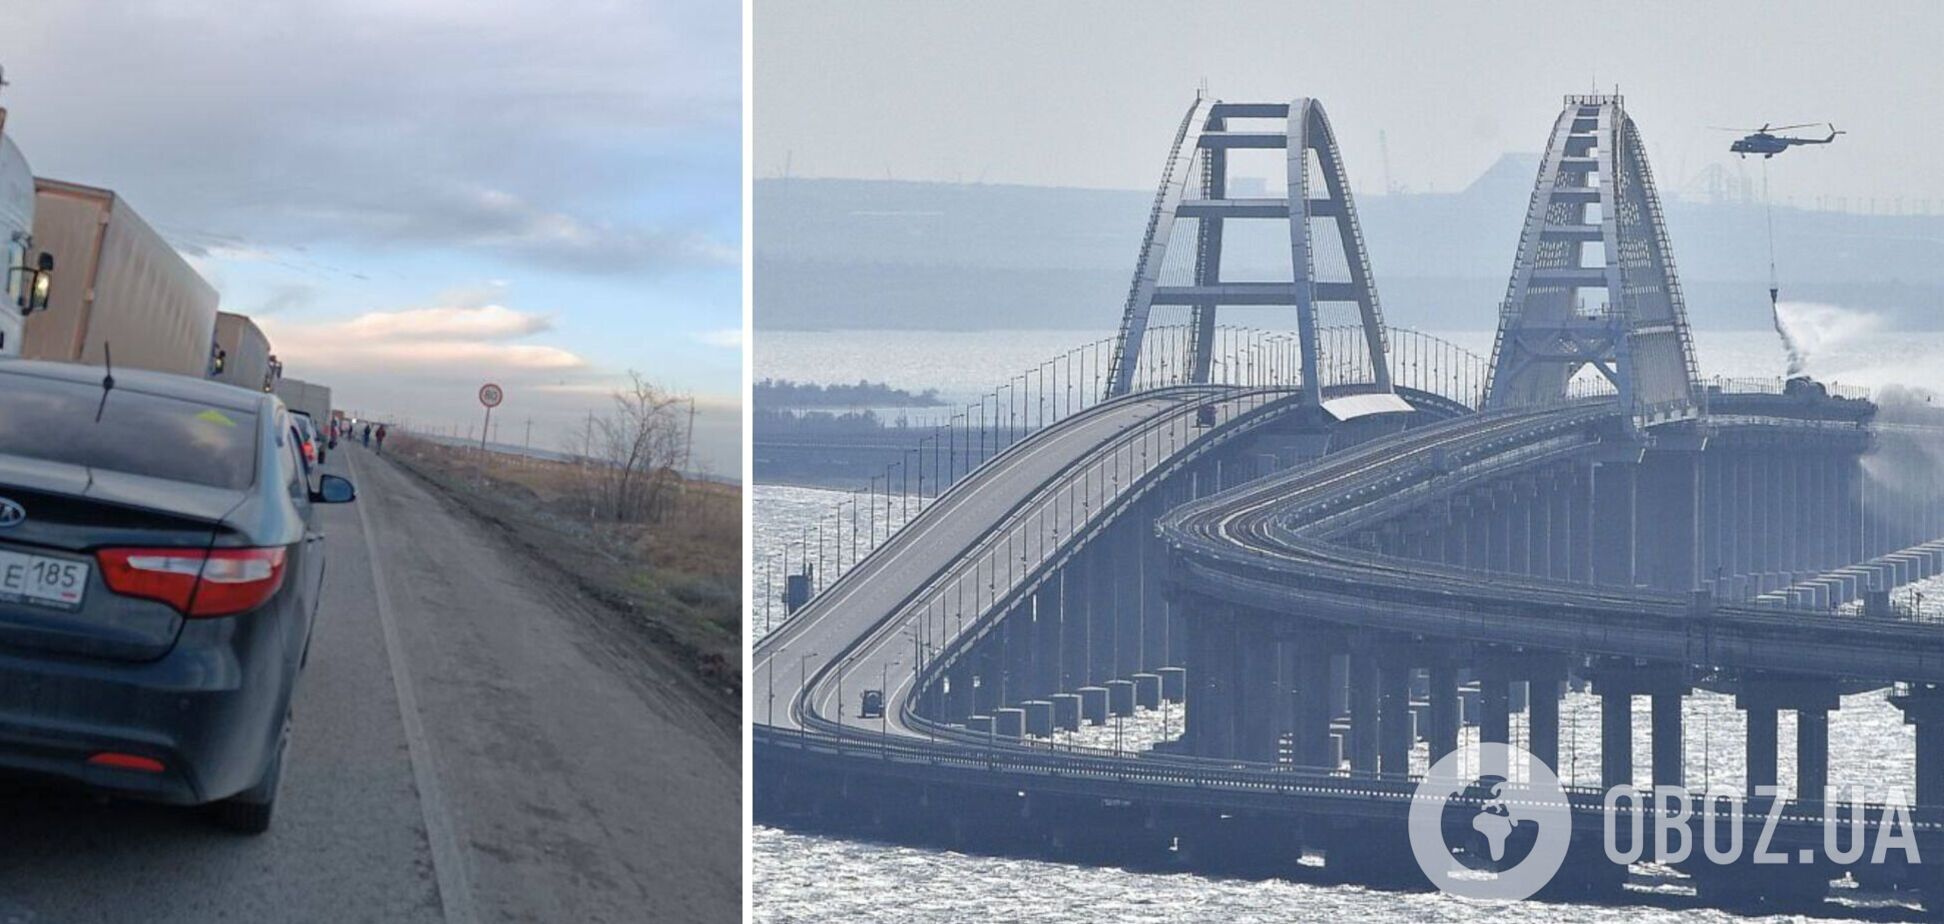 Крым в изоляции: на полуострове из-за воздушной тревоги перекрыли Крымский мост и 'Чонгар'. Фото